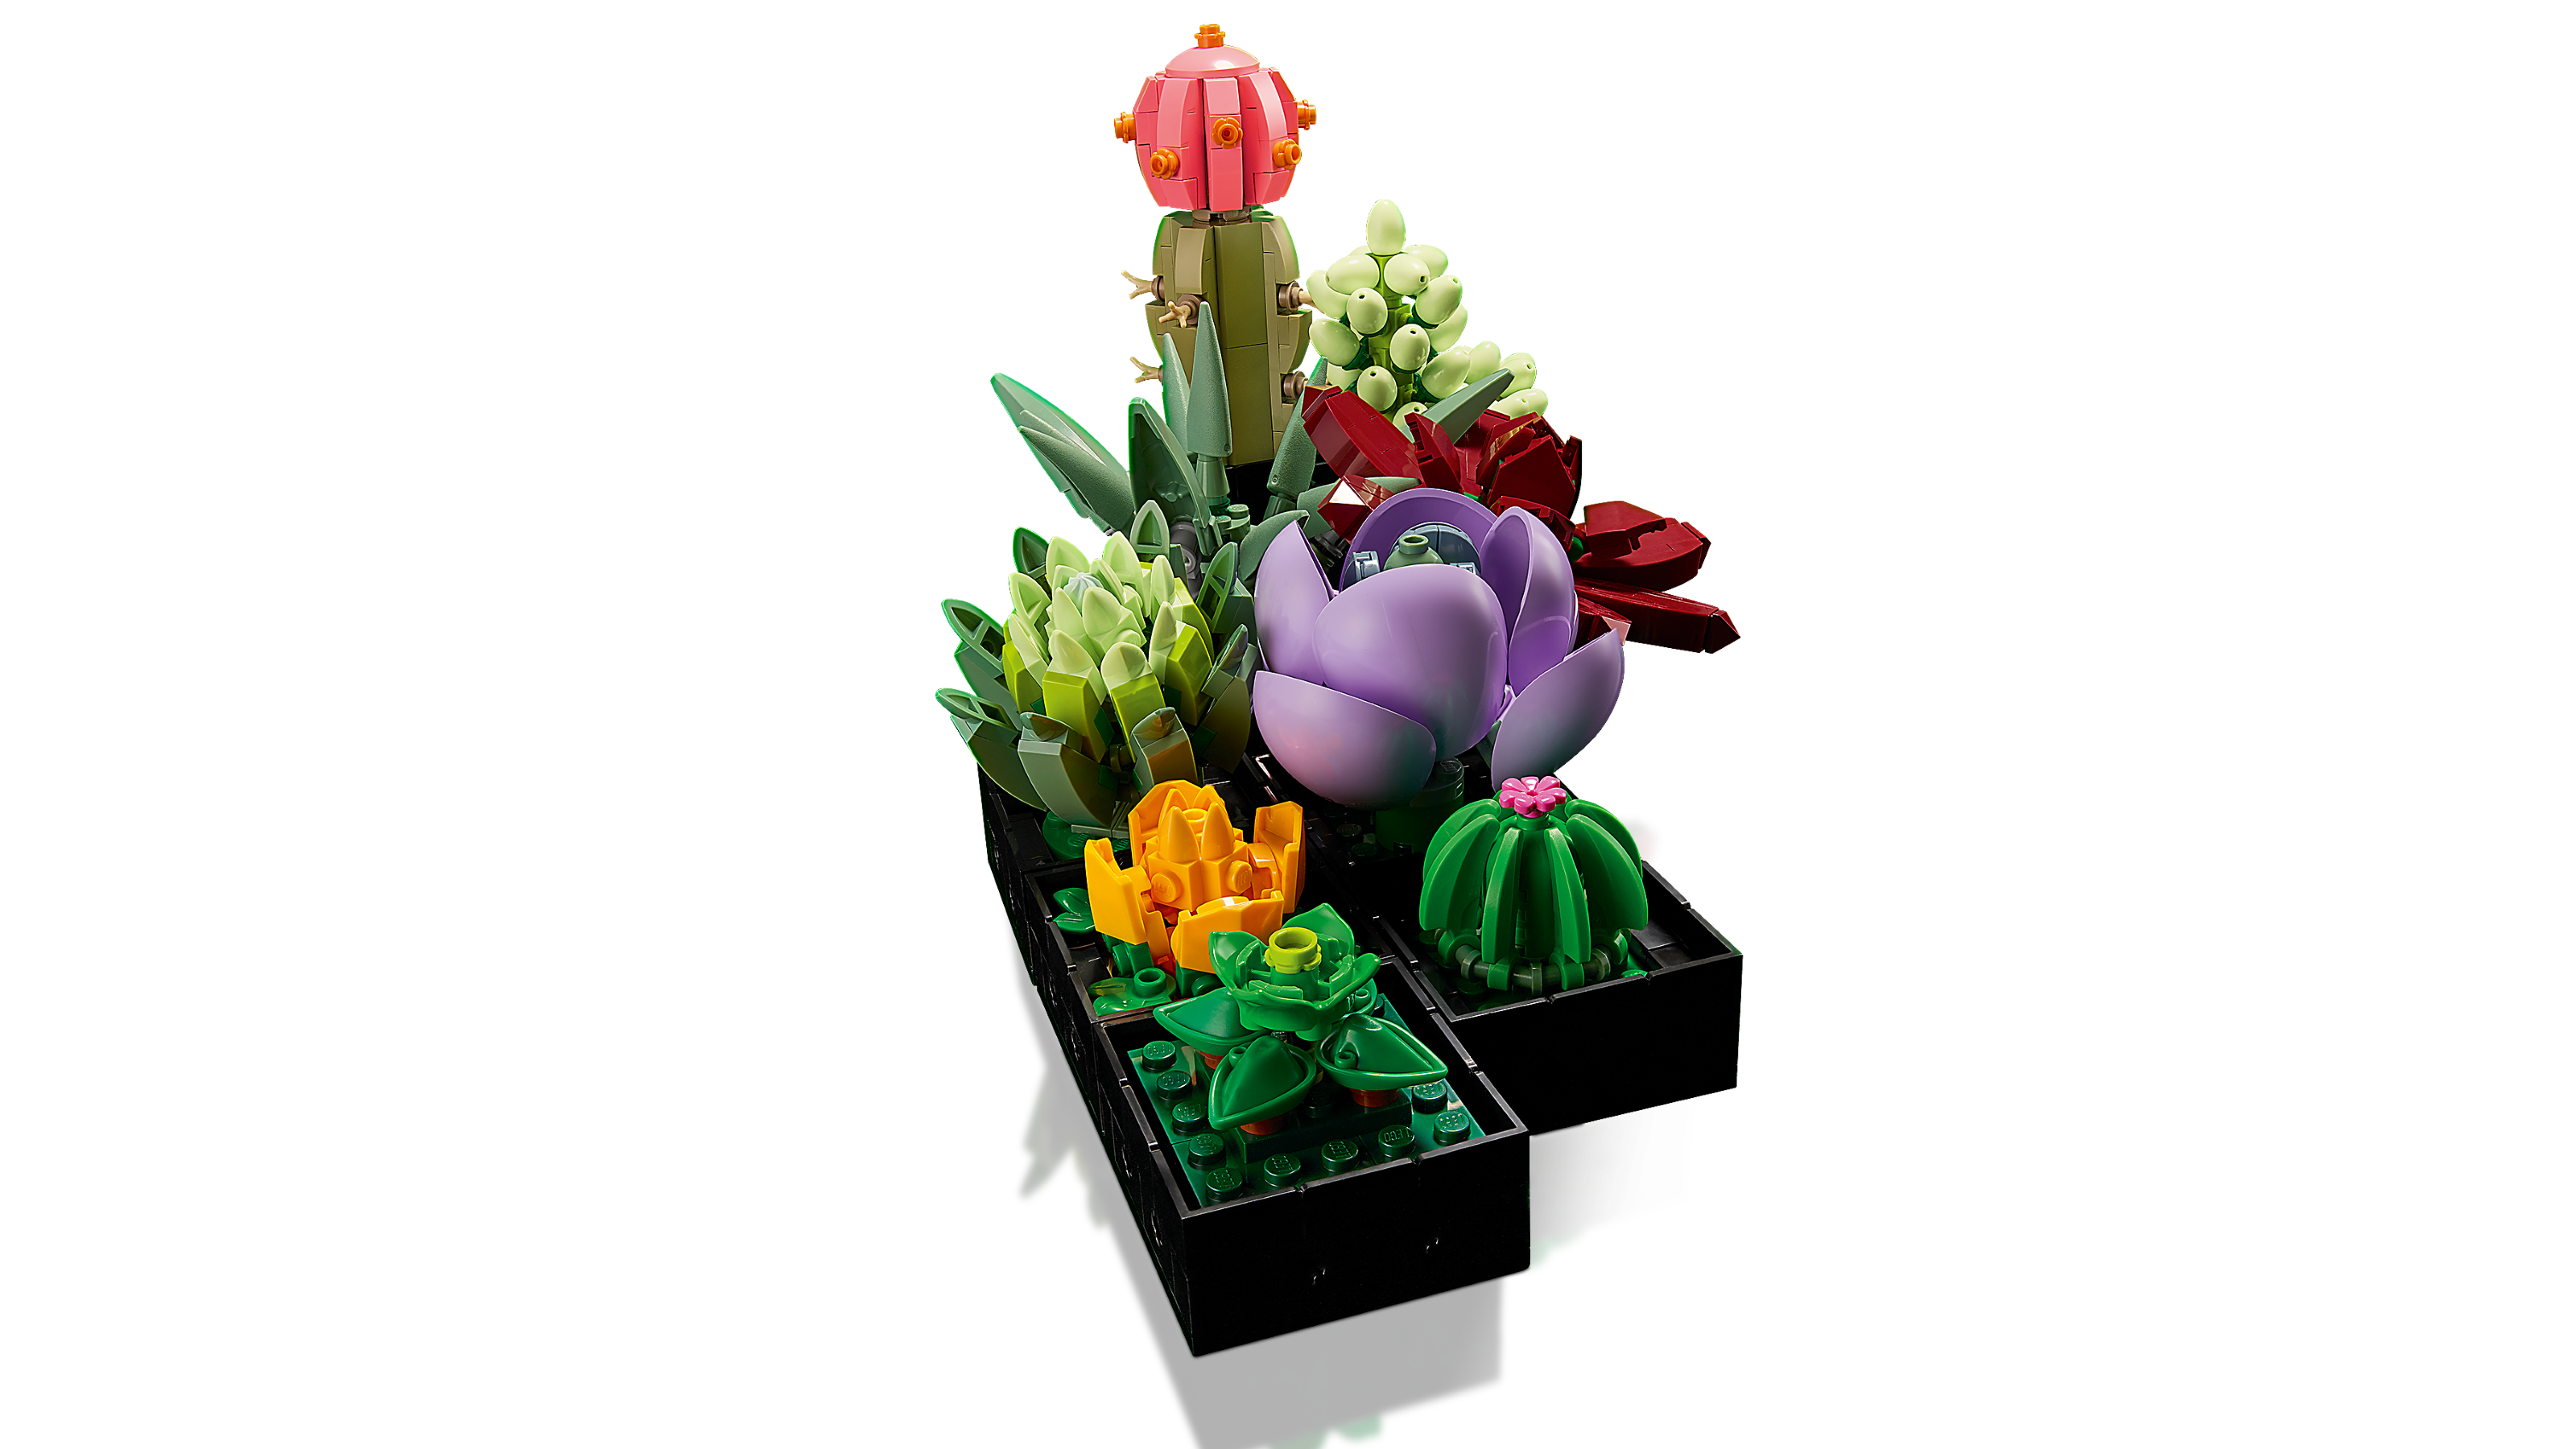 ▻ Très vite testé : LEGO Botanical Collection 10309 Succulents - HOTH BRICKS